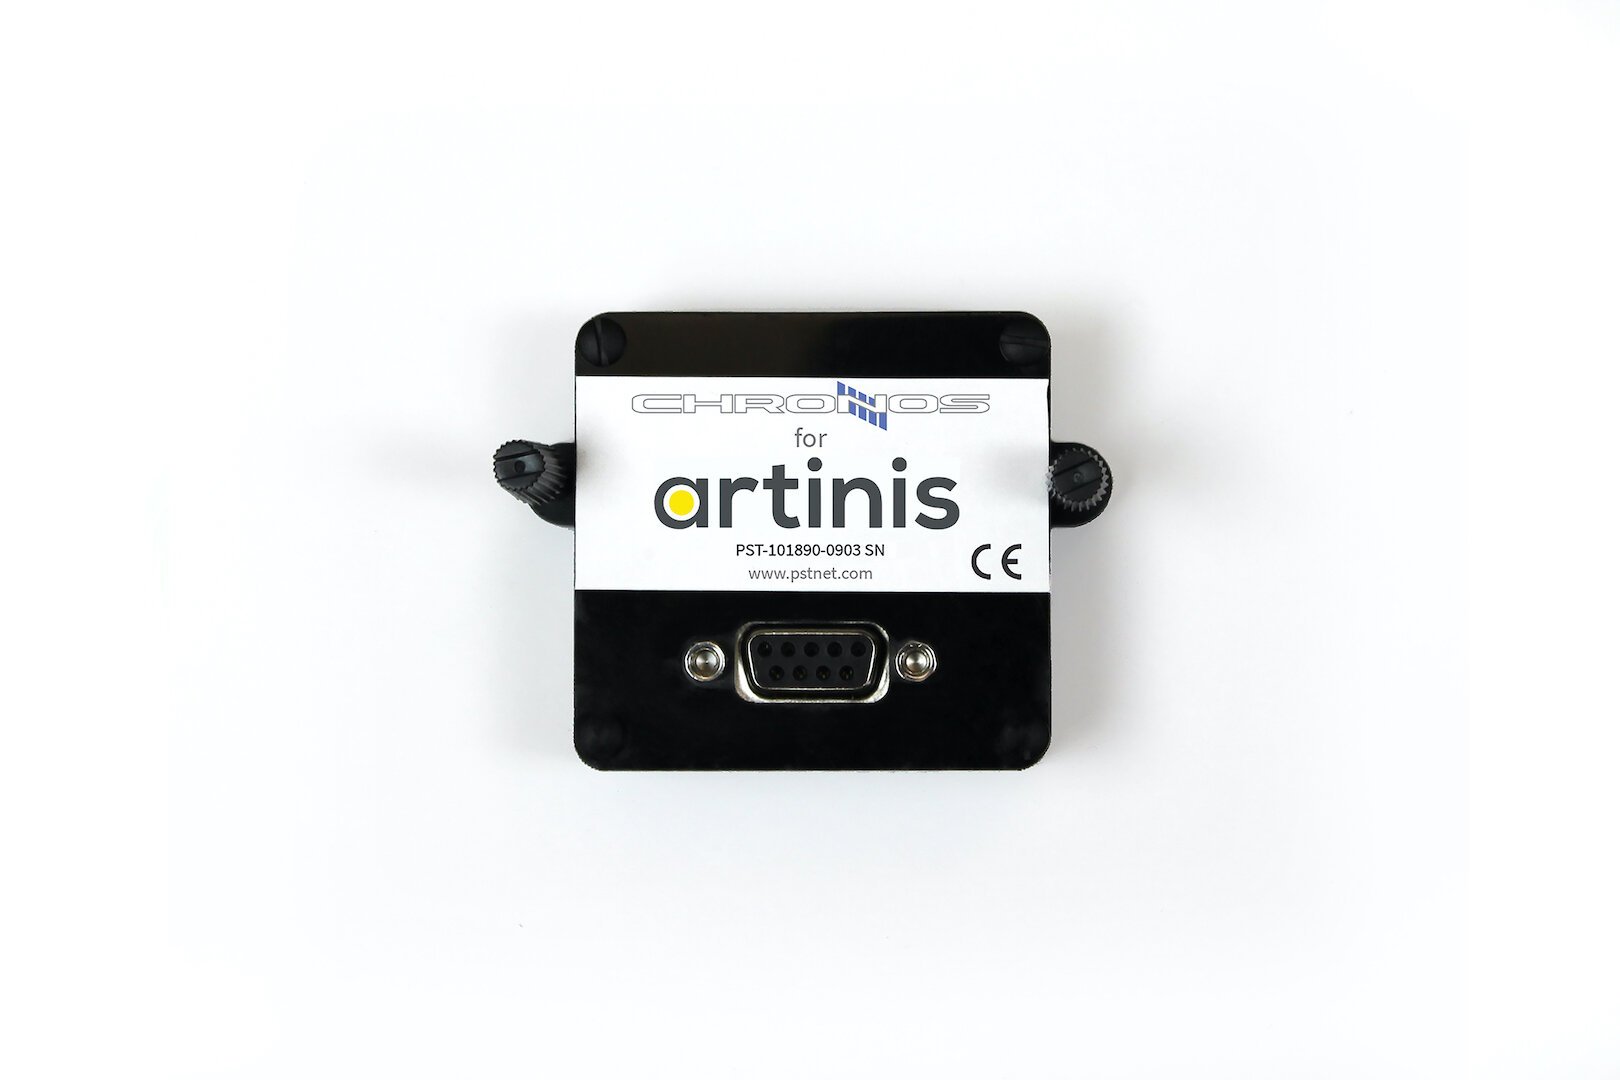 Chronos adaptor for Artinis.jpg